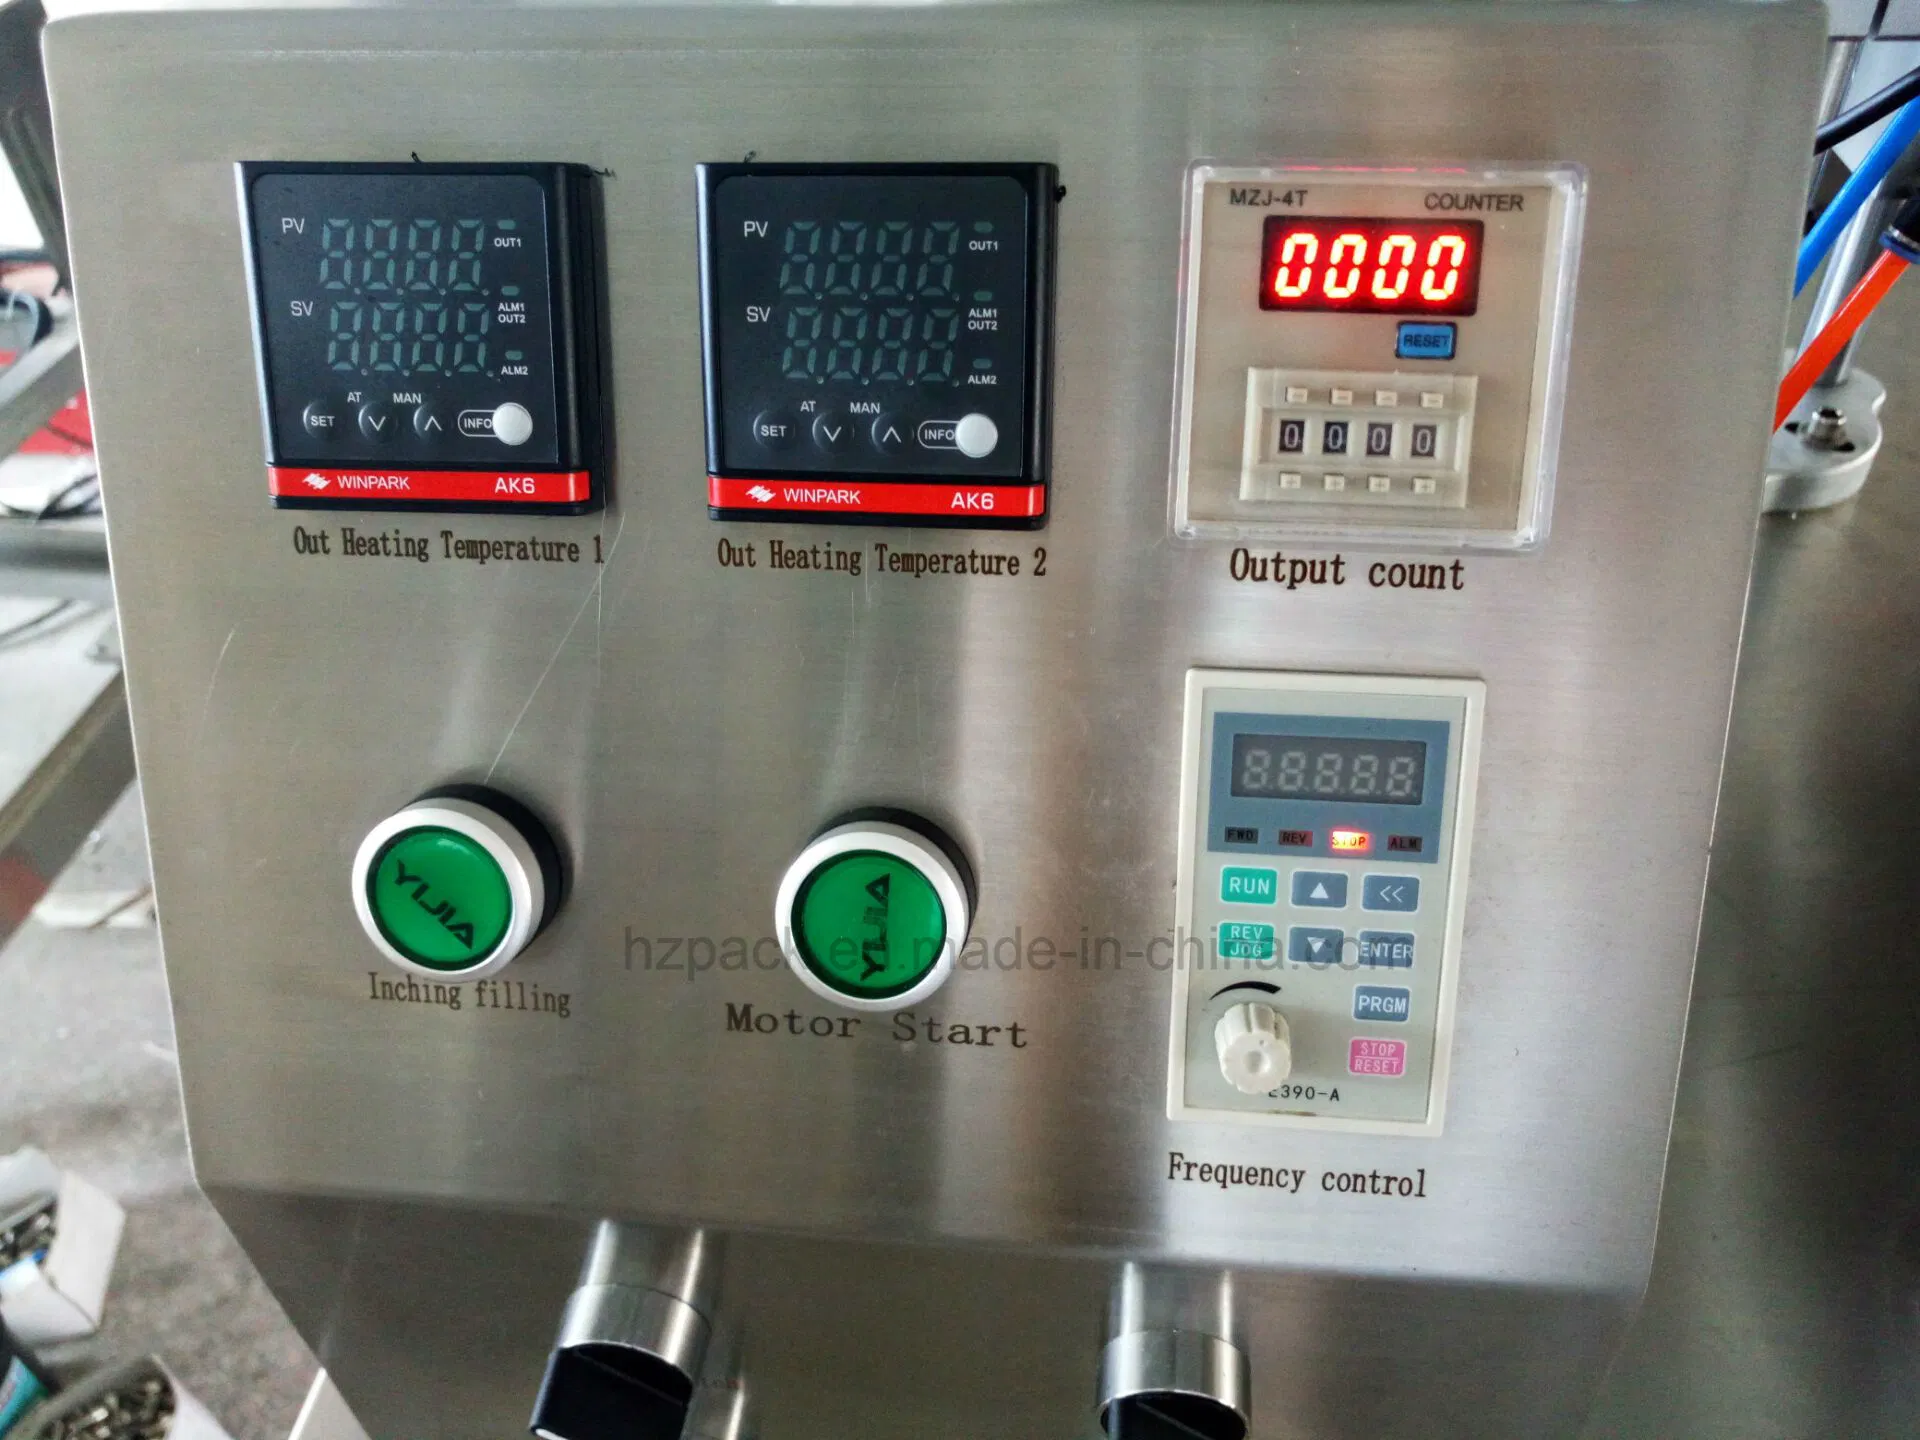 Semi--Automatic Milk Paste Liquid Tube Filling Sealing Machine (plastic tube) Equipment